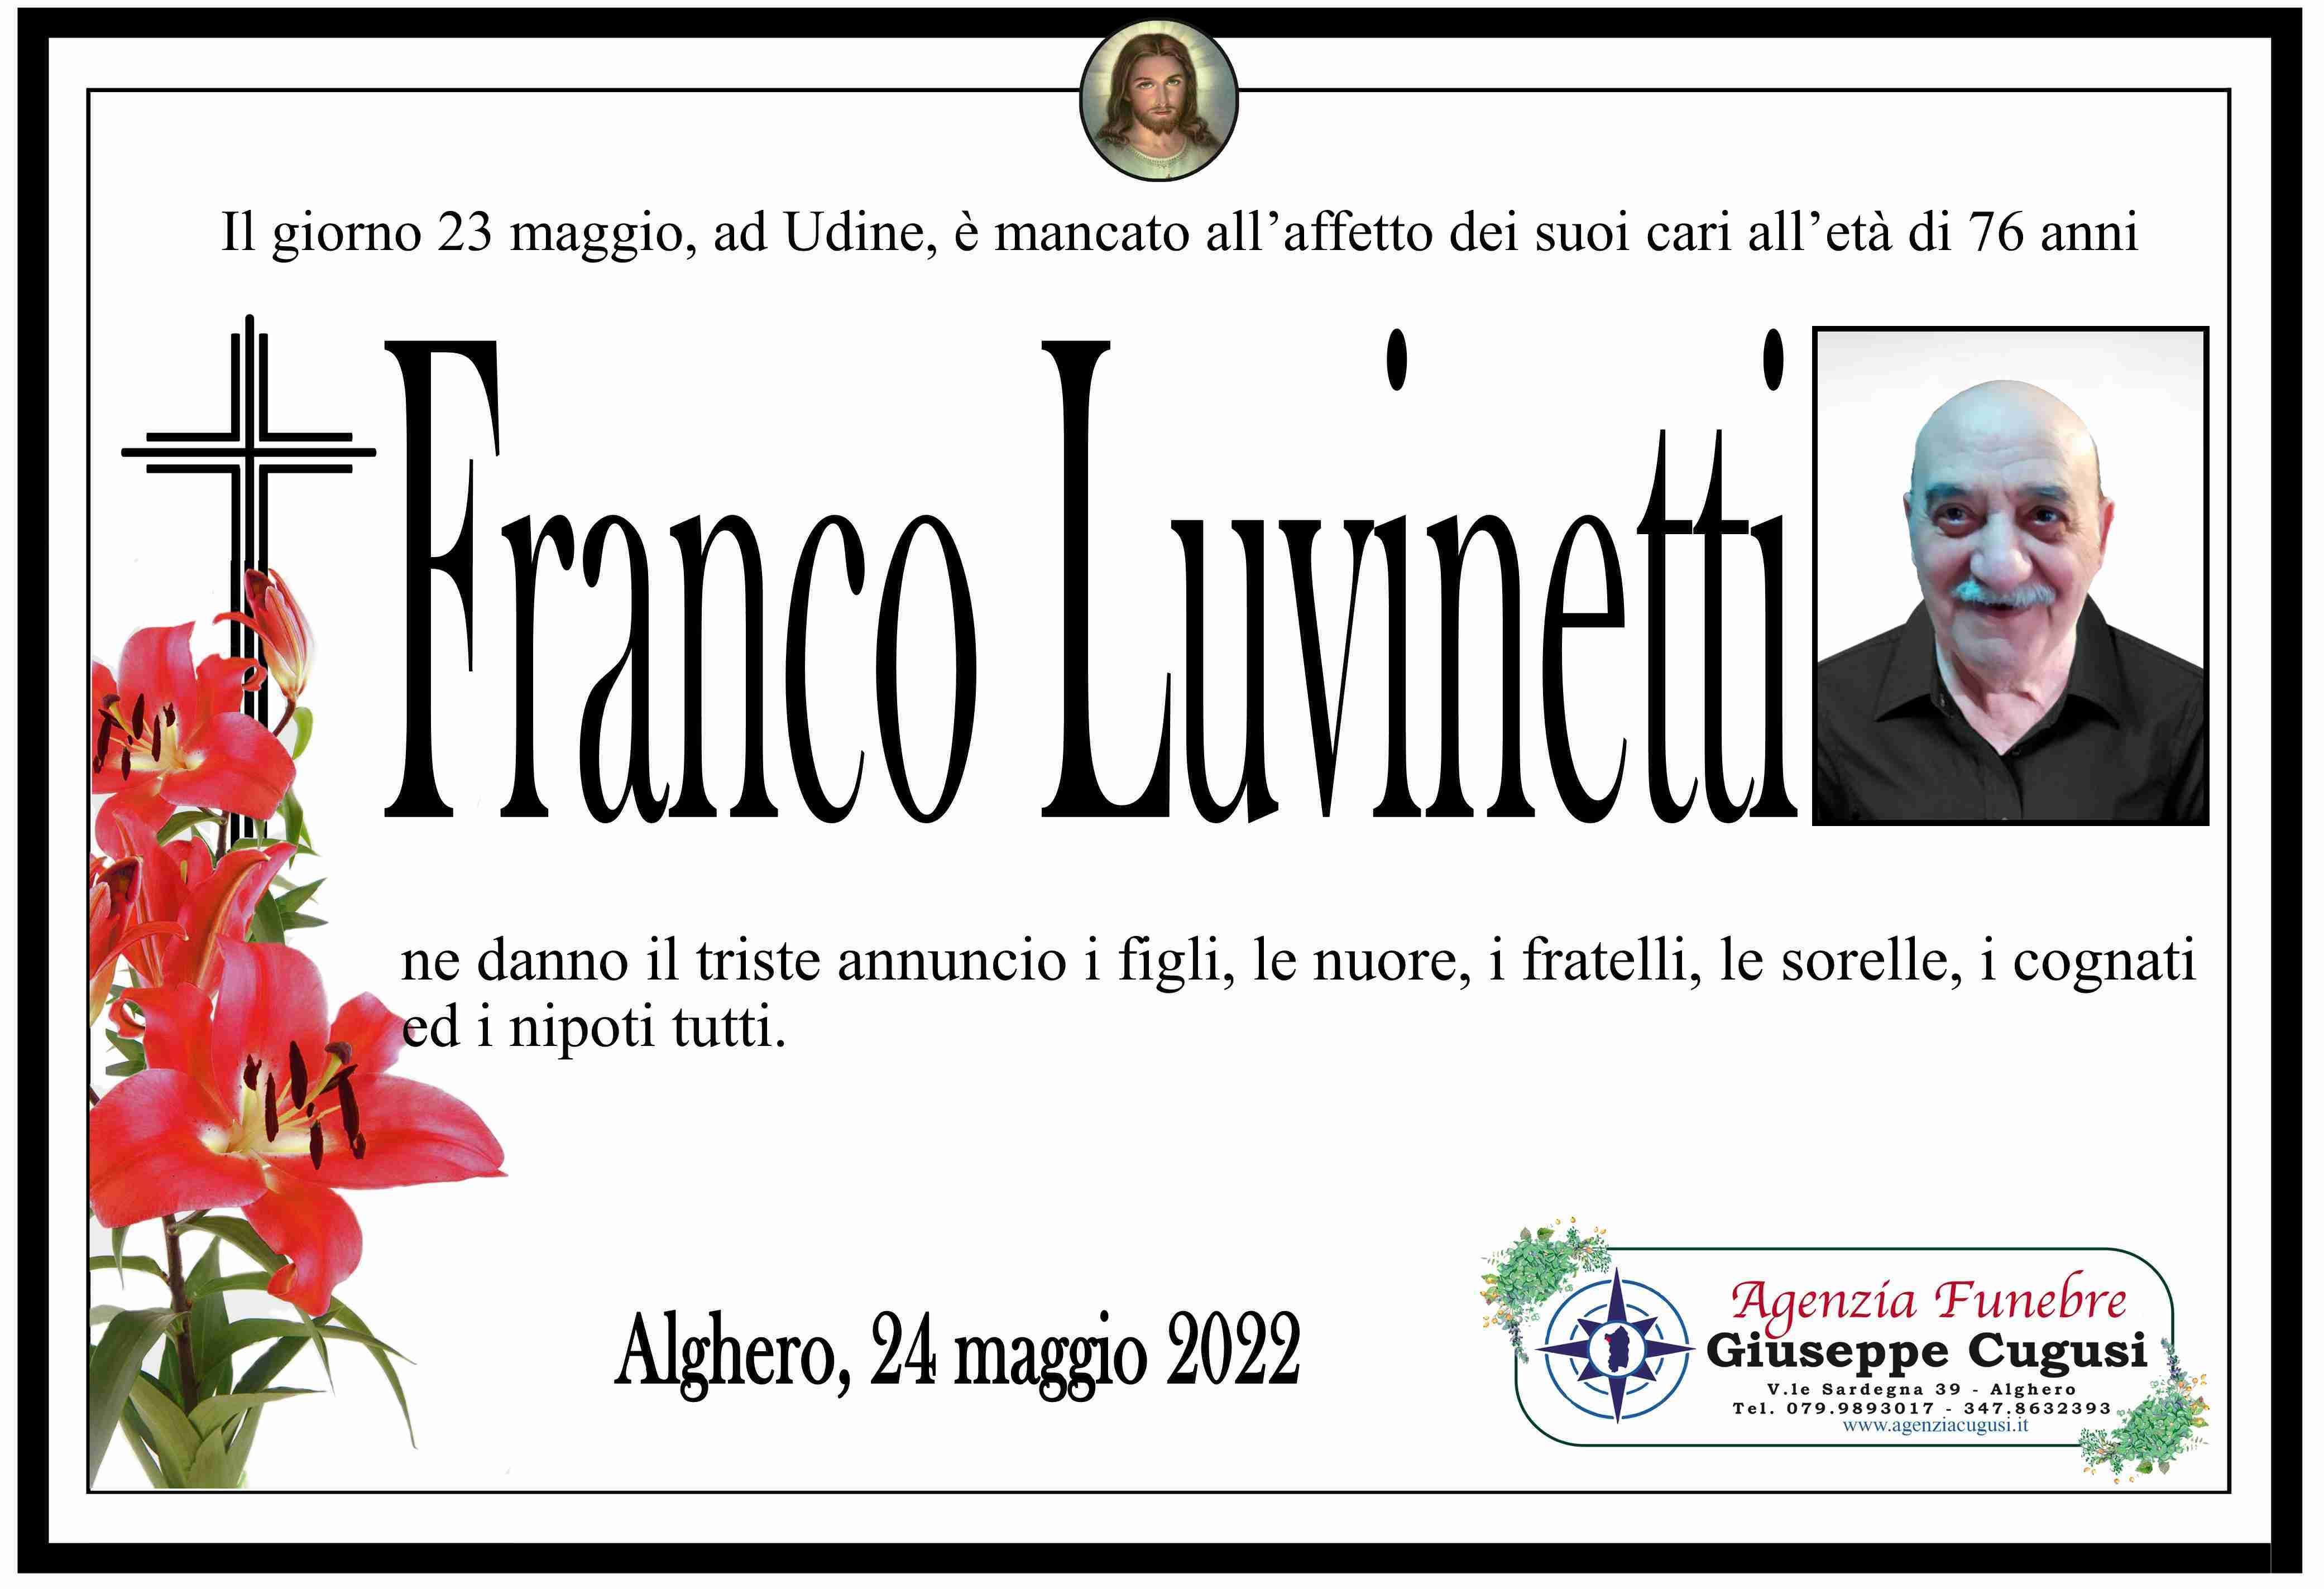 Franco Luvinetti